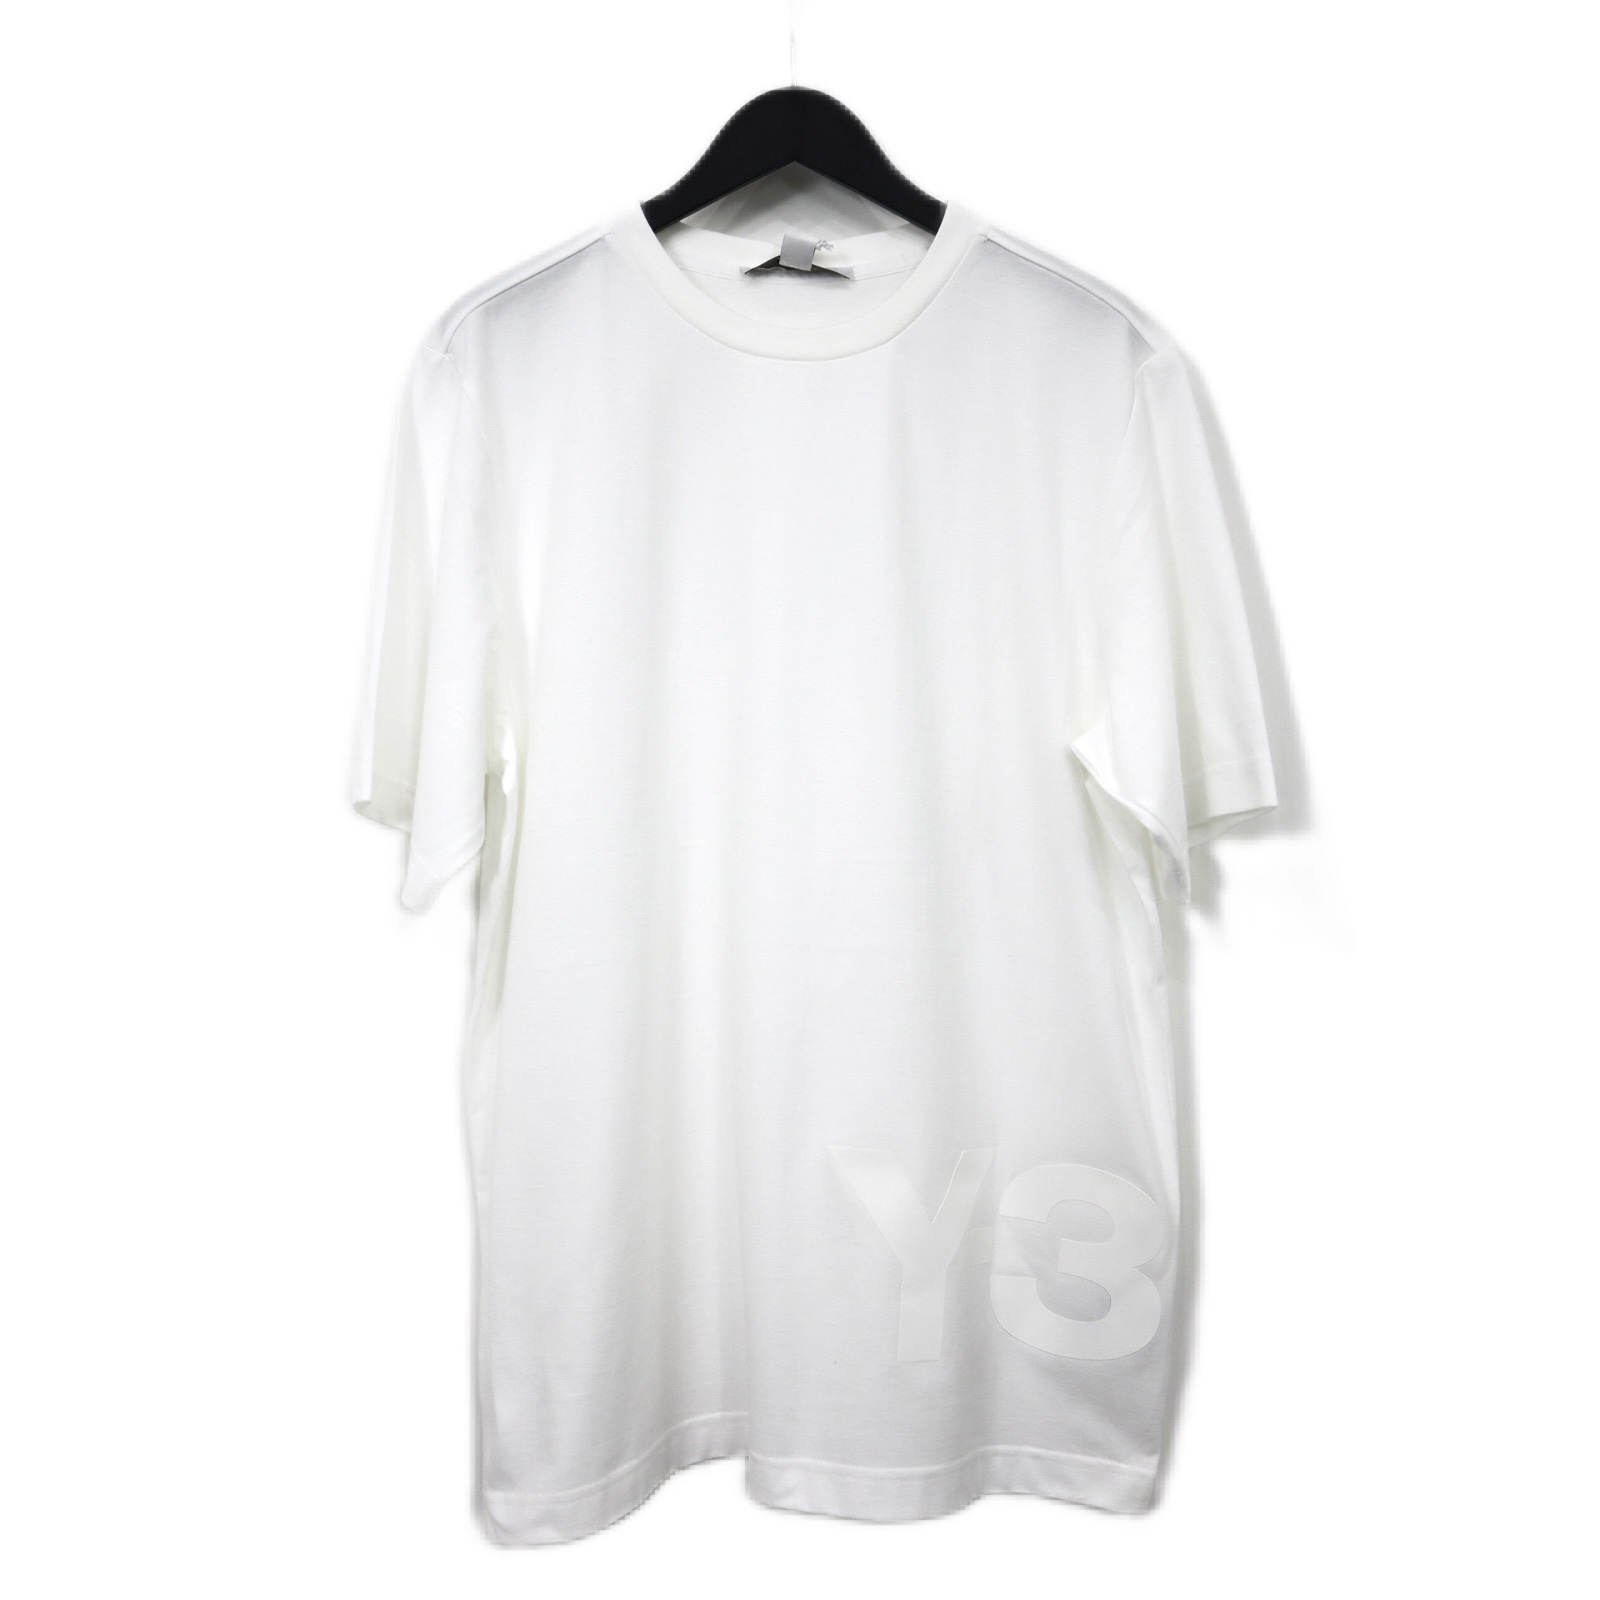 【Y-3】 ワイスリー / 20th anniversary / LARGE LOGO Tシャツ / WHITE / 20周年限定モデル